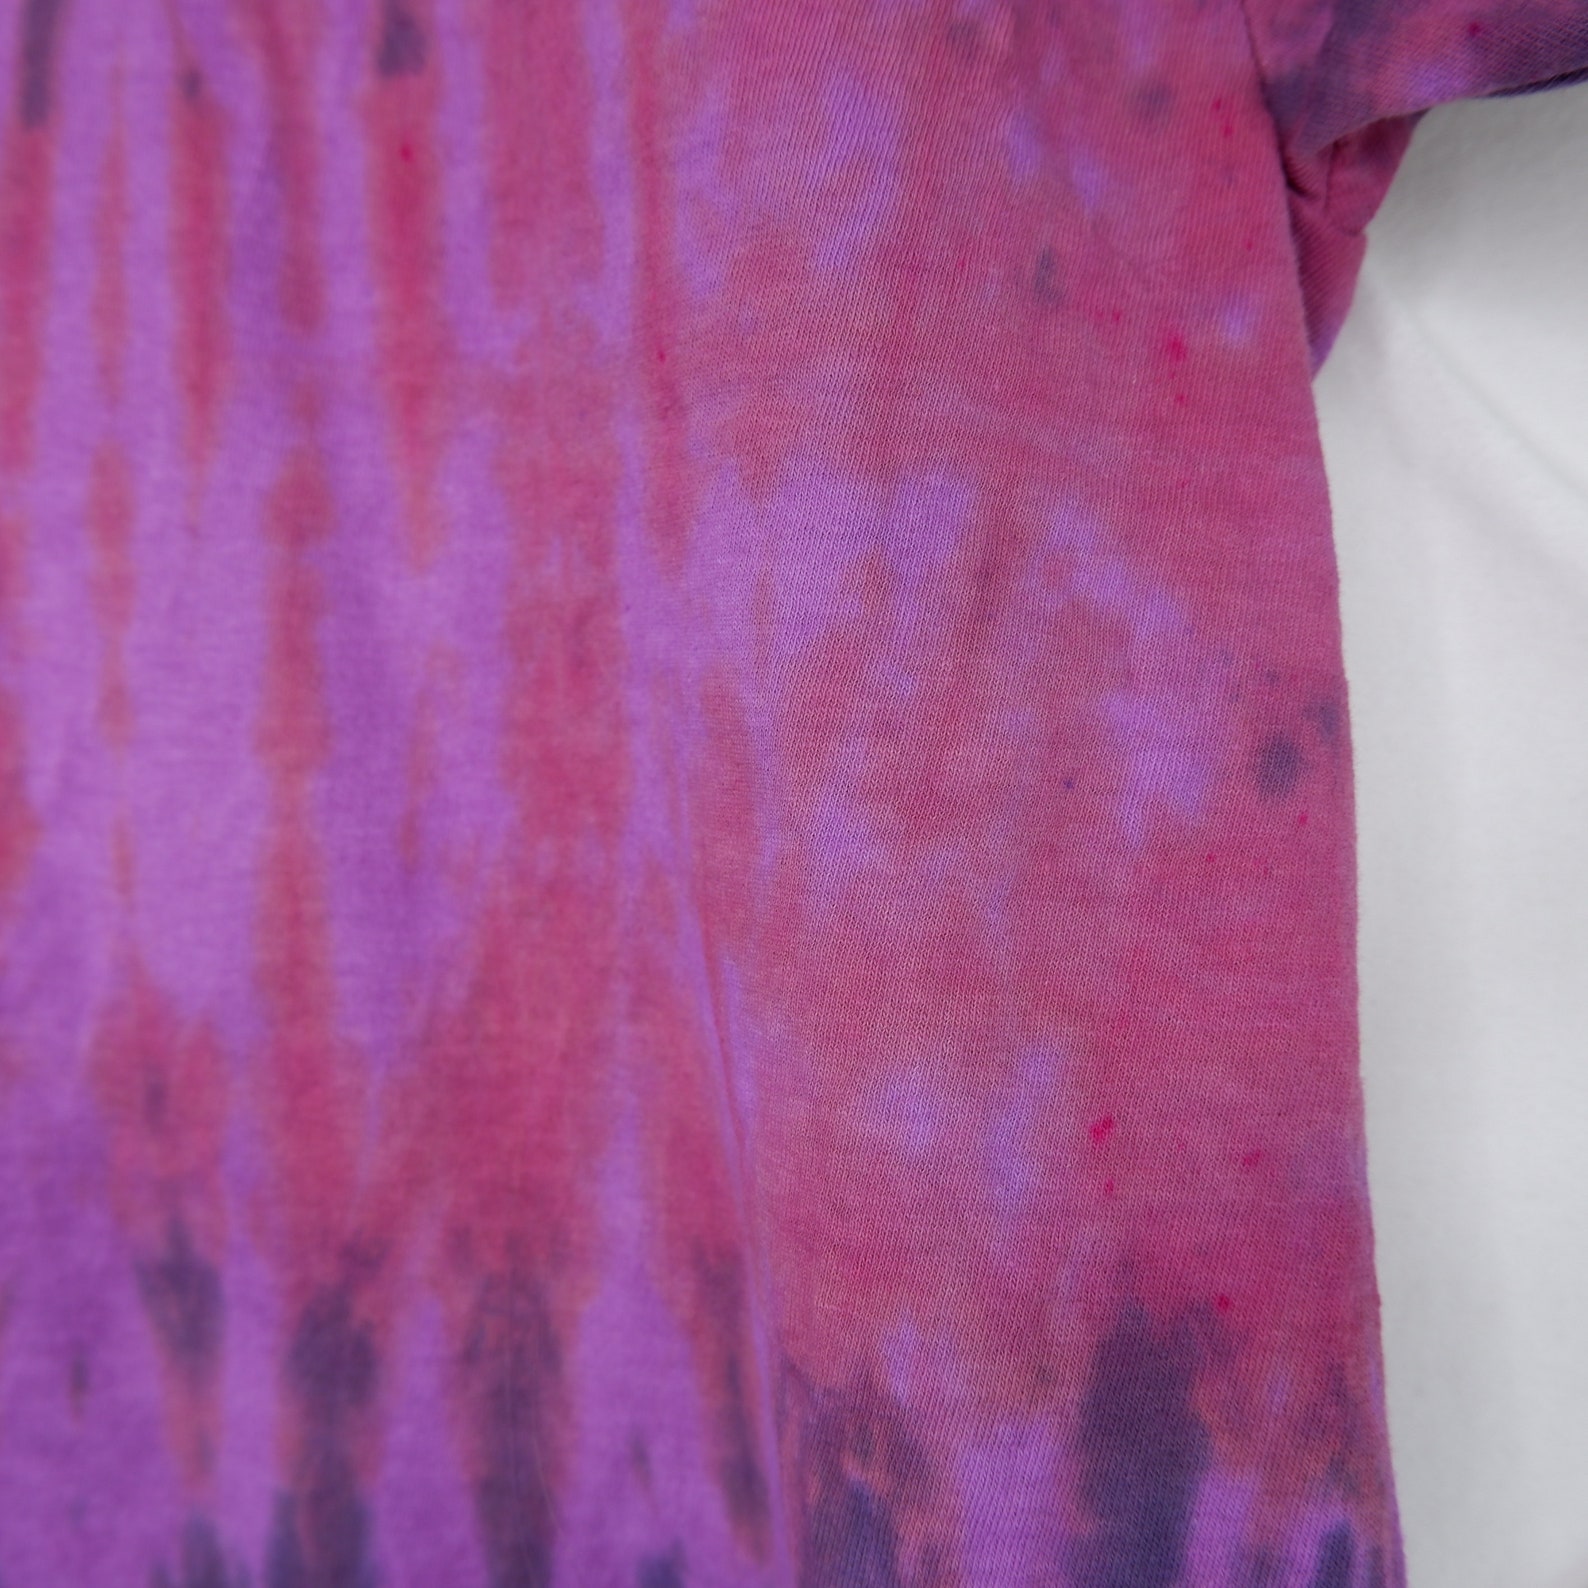 Pink & Purple TIE DYE Unique Unisex Tie Dye T-shirt Medium 100% Cotton ...